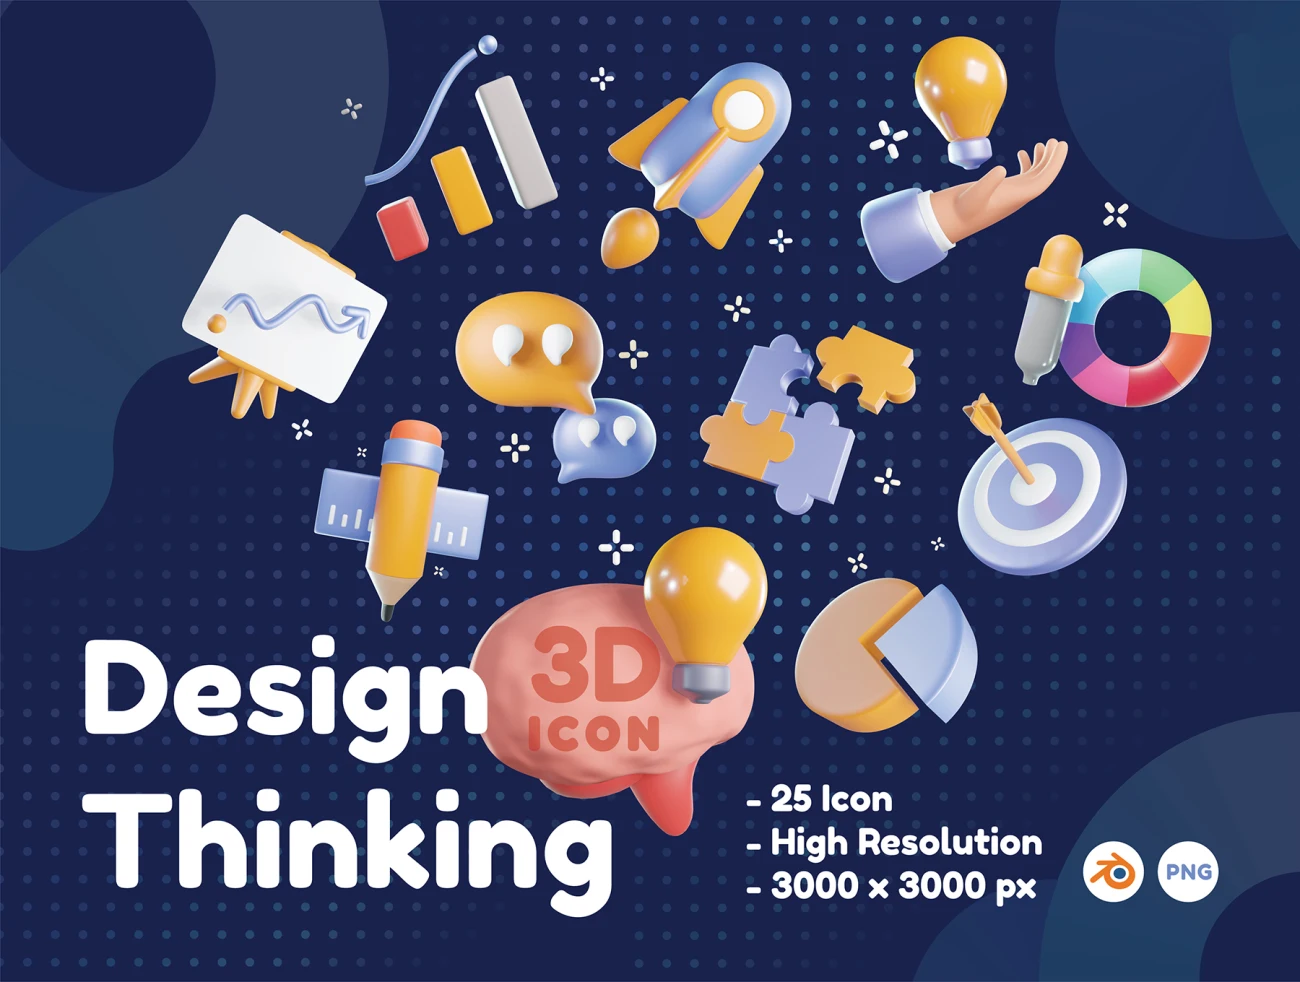 设计思维3D图标模型素材 Design Thinking 3D Icons .keynote .psd插图1